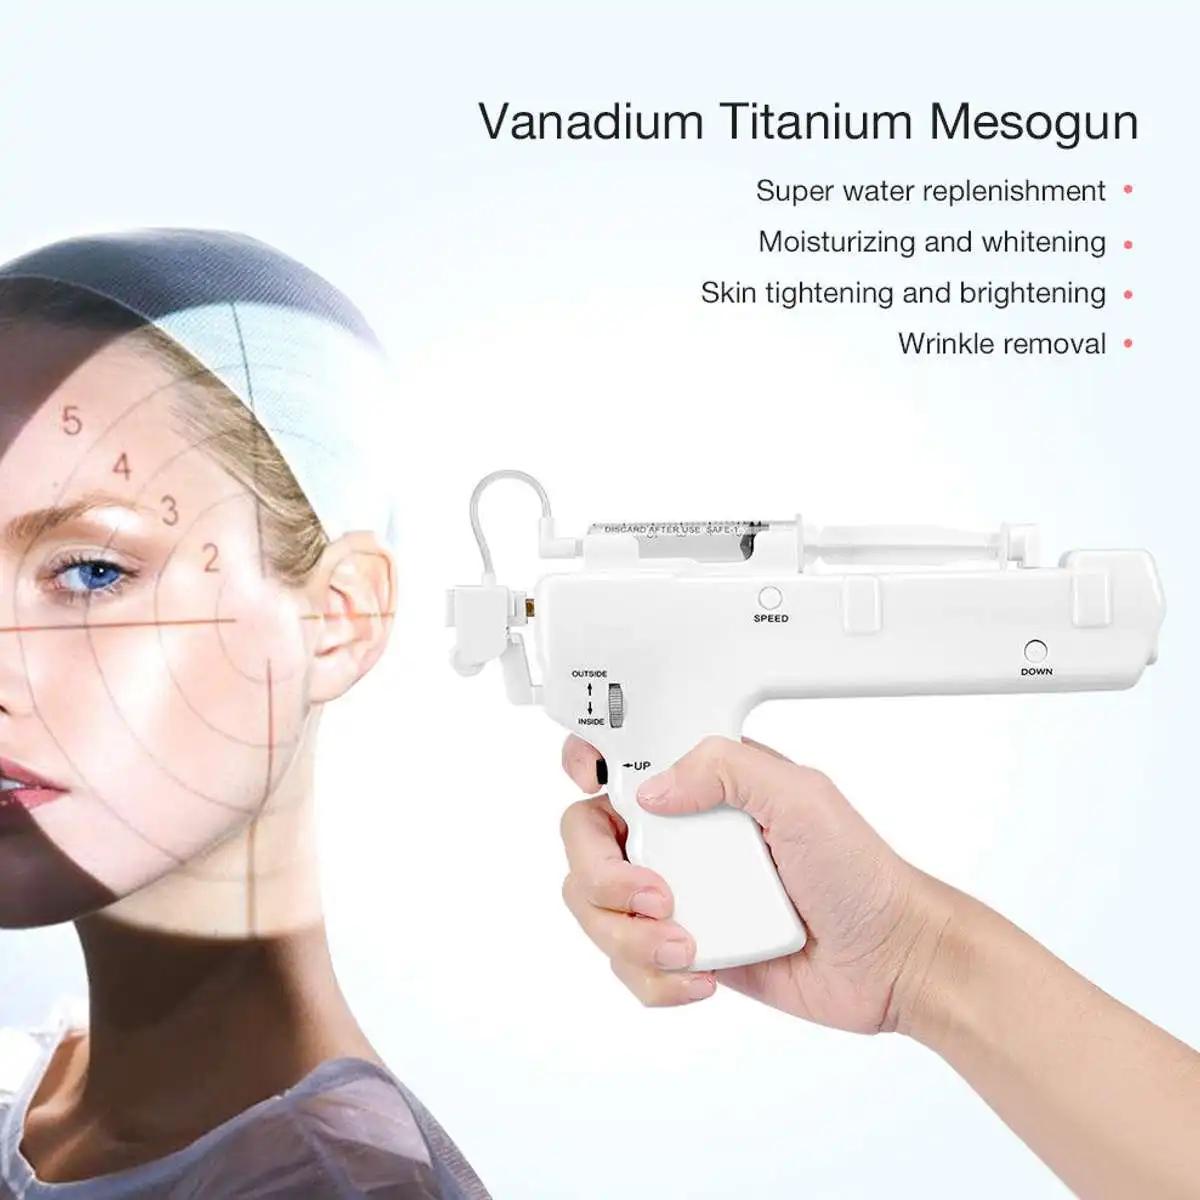 25D ванадиевые титановые инъекции Пистолеты для лица микрокристалл омоложения кожи без иглы устройство инжектор подтяжки инструмент для ухода за кожей